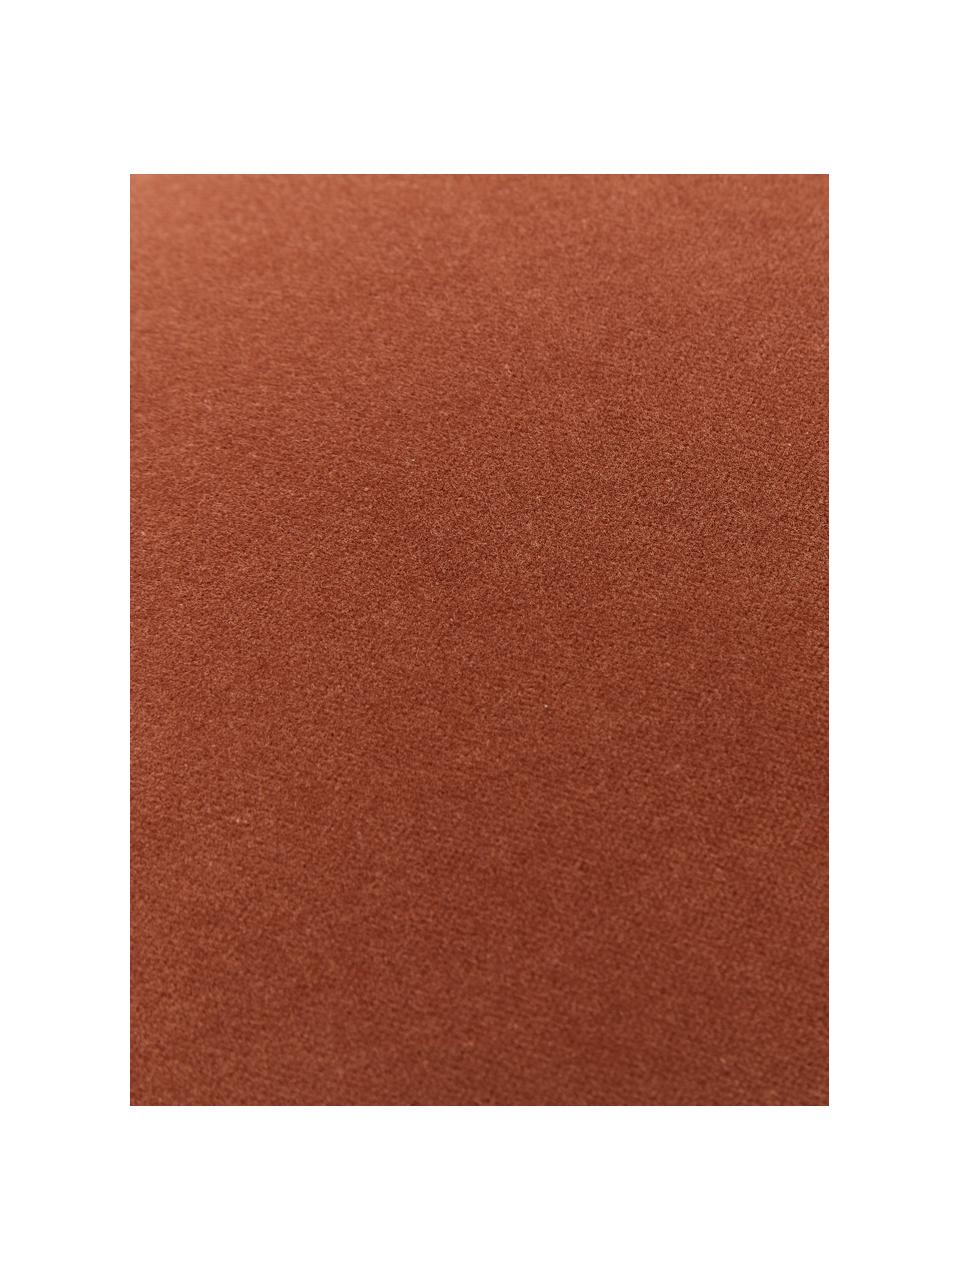 Einfarbige Samt-Kissenhülle Dana in Rostrot, 100% Baumwollsamt, Rostrot, B 30 x L 50 cm